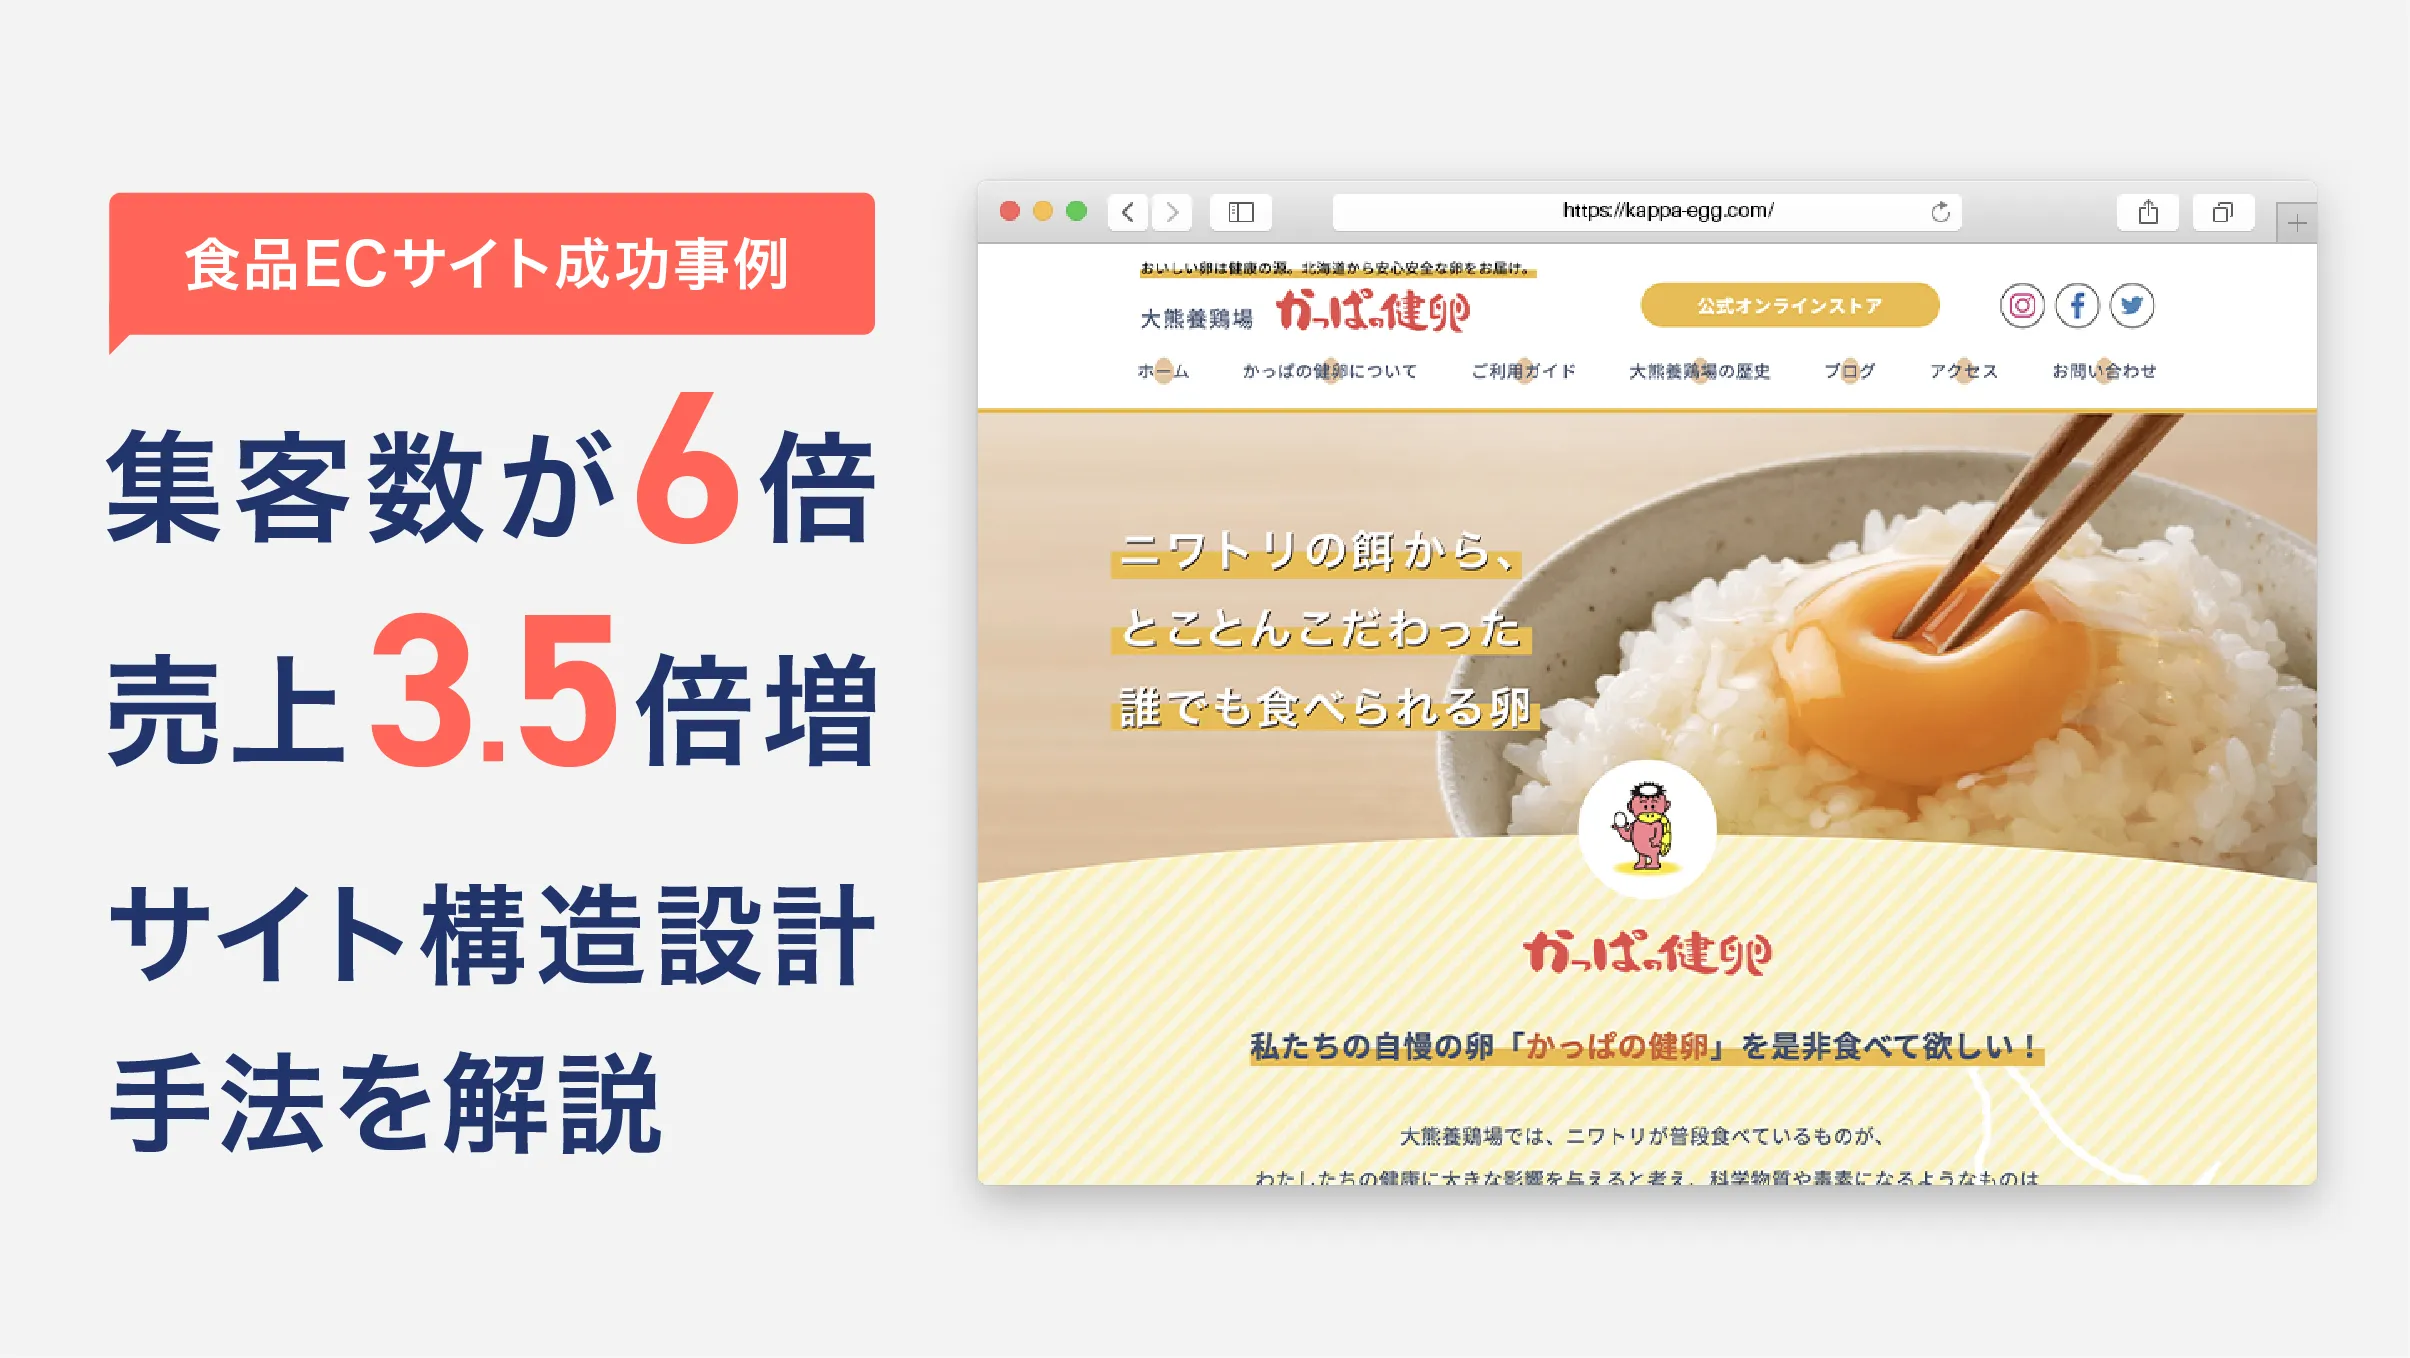 【食品ECサイト成功事例】集客数が6倍、売上3.5倍増となったサイト構造設計手法を解説